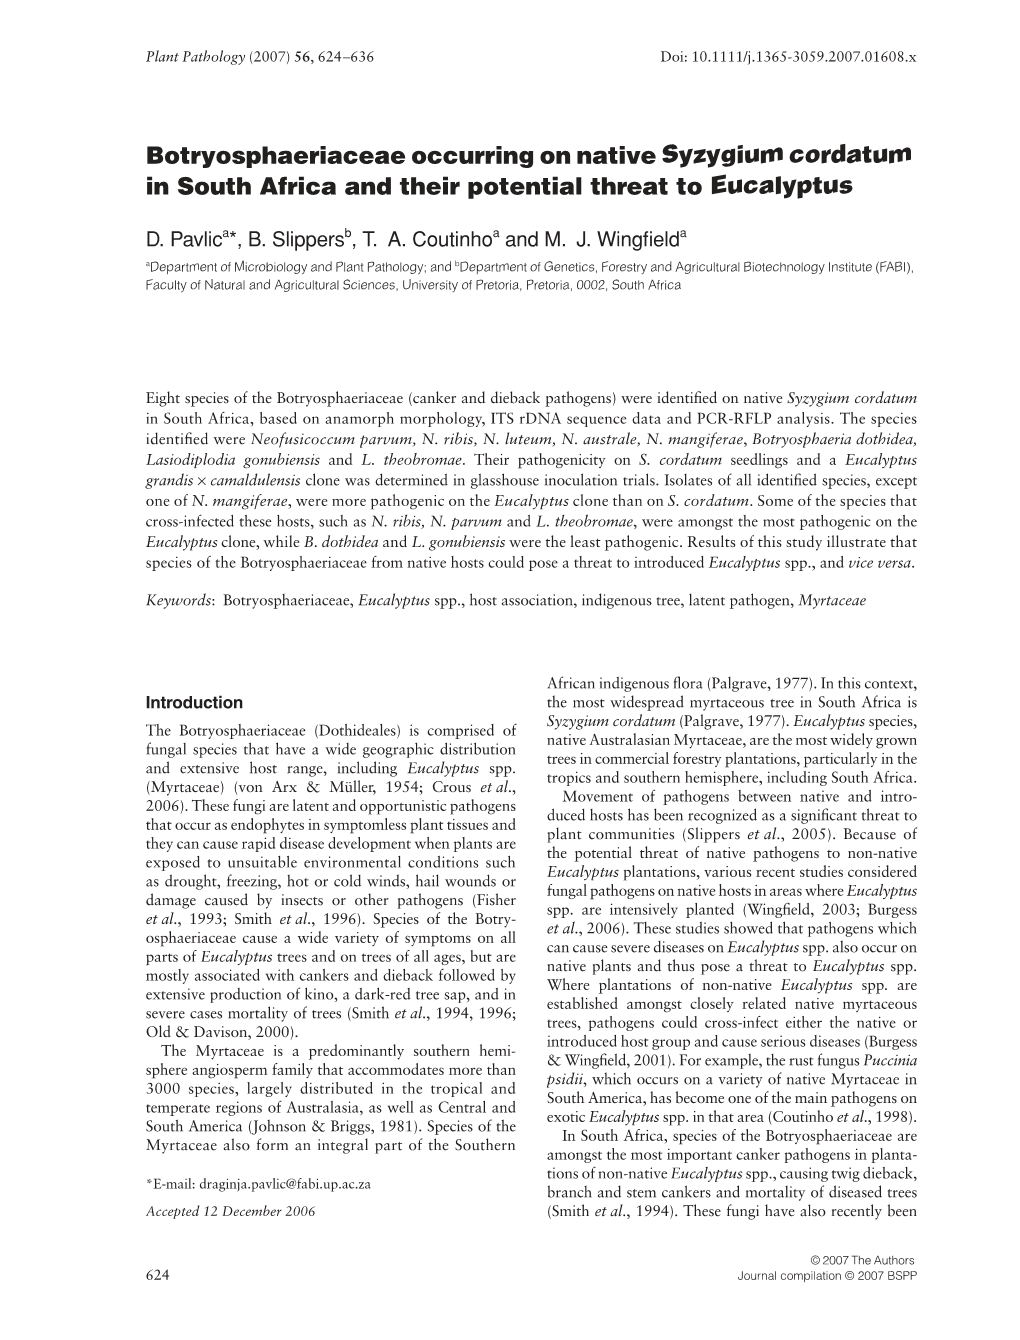 Botryosphaeriaceae Occurring on Native Syzygium Cordatum In